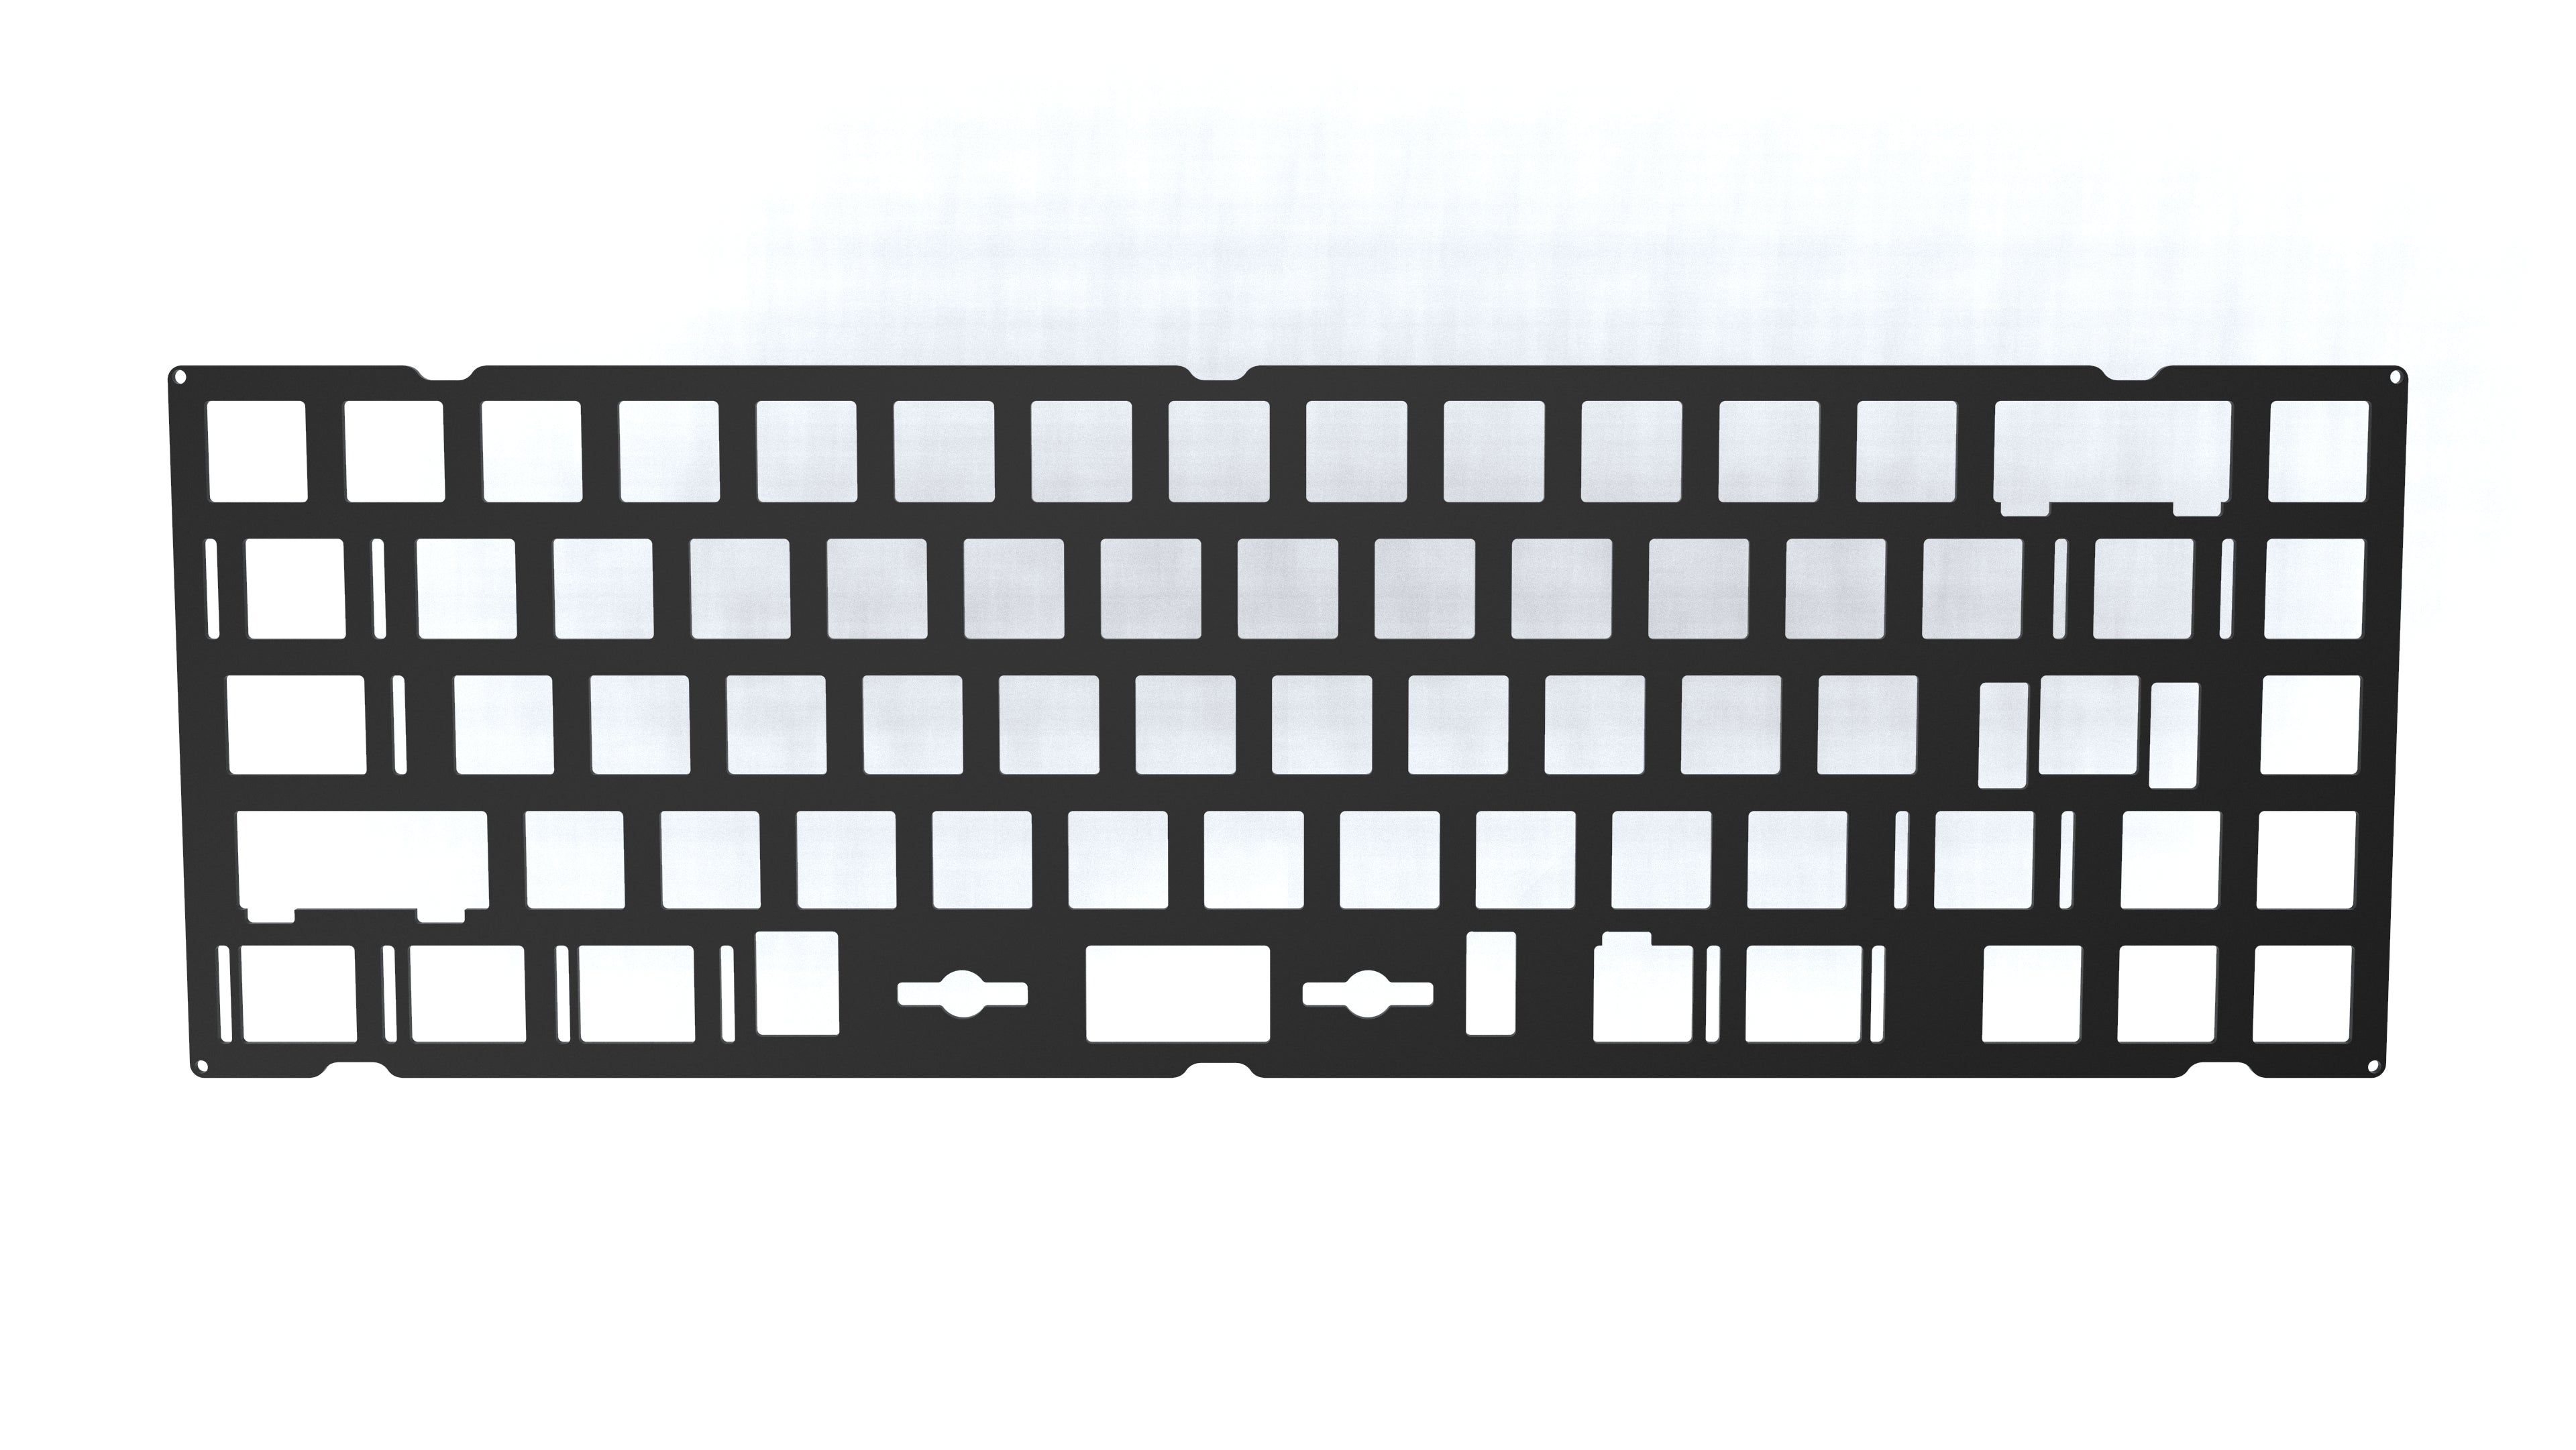 [In Stock] Angel Keyboard Add-ons